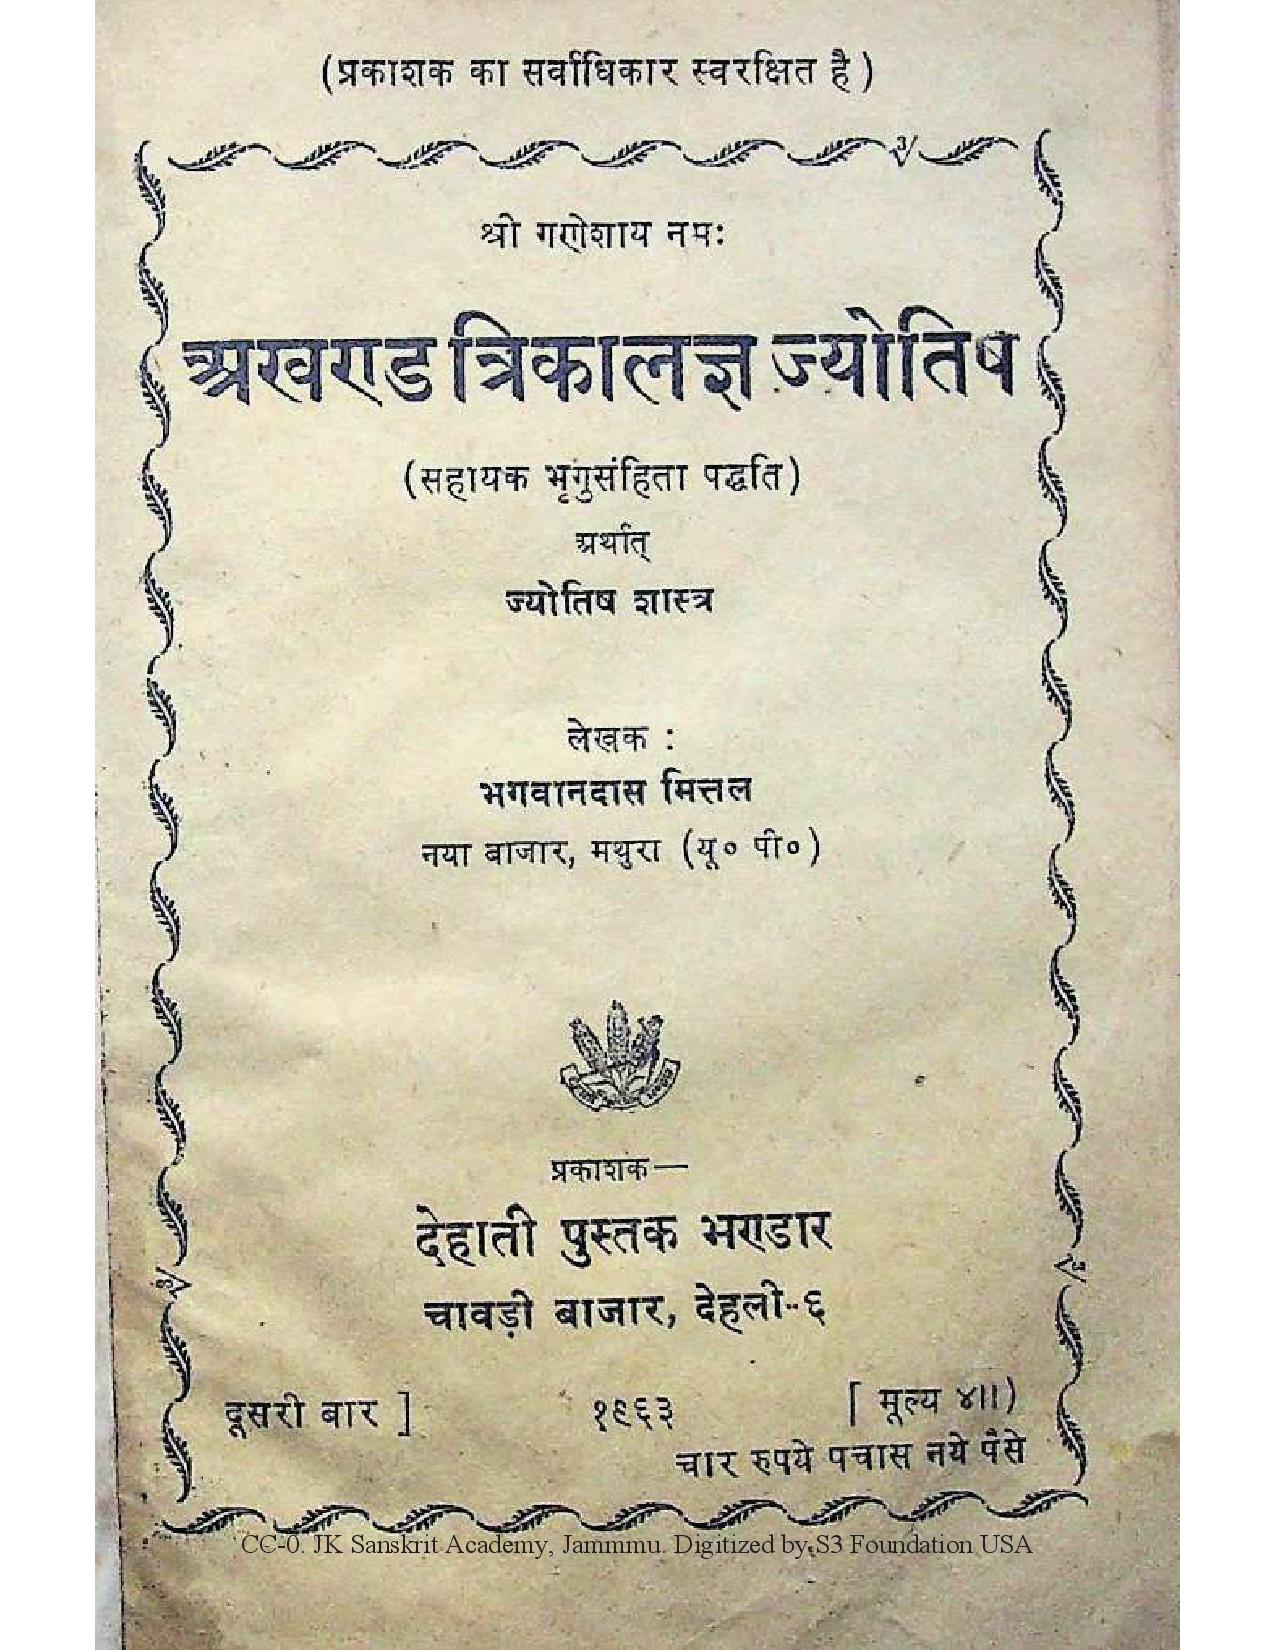 bhagavan das mittal akhand trikalagya jyotish sahayak brigu samhita paddhati 1963